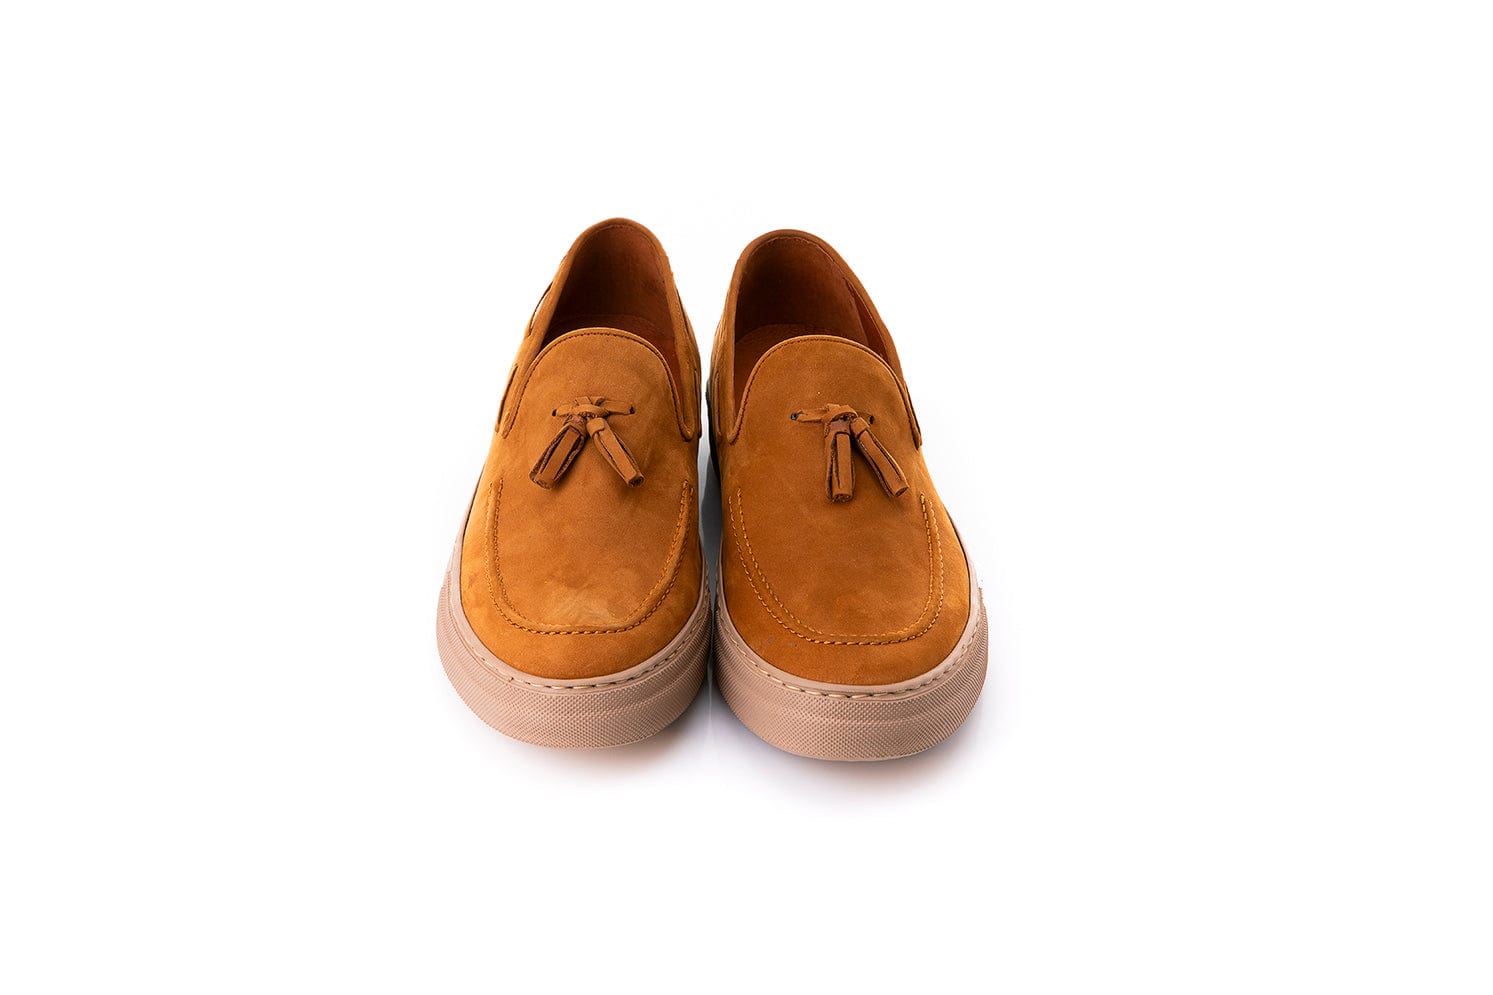 Ανδρικό Δερμάτινο Παπούτσι Robinson #69425 ταμπά-La Scarpa Shoes Ανδρικό Δερμάτινο Παπούτσι Robinson #69425 ταμπά MEN CASUAL ROBINSON